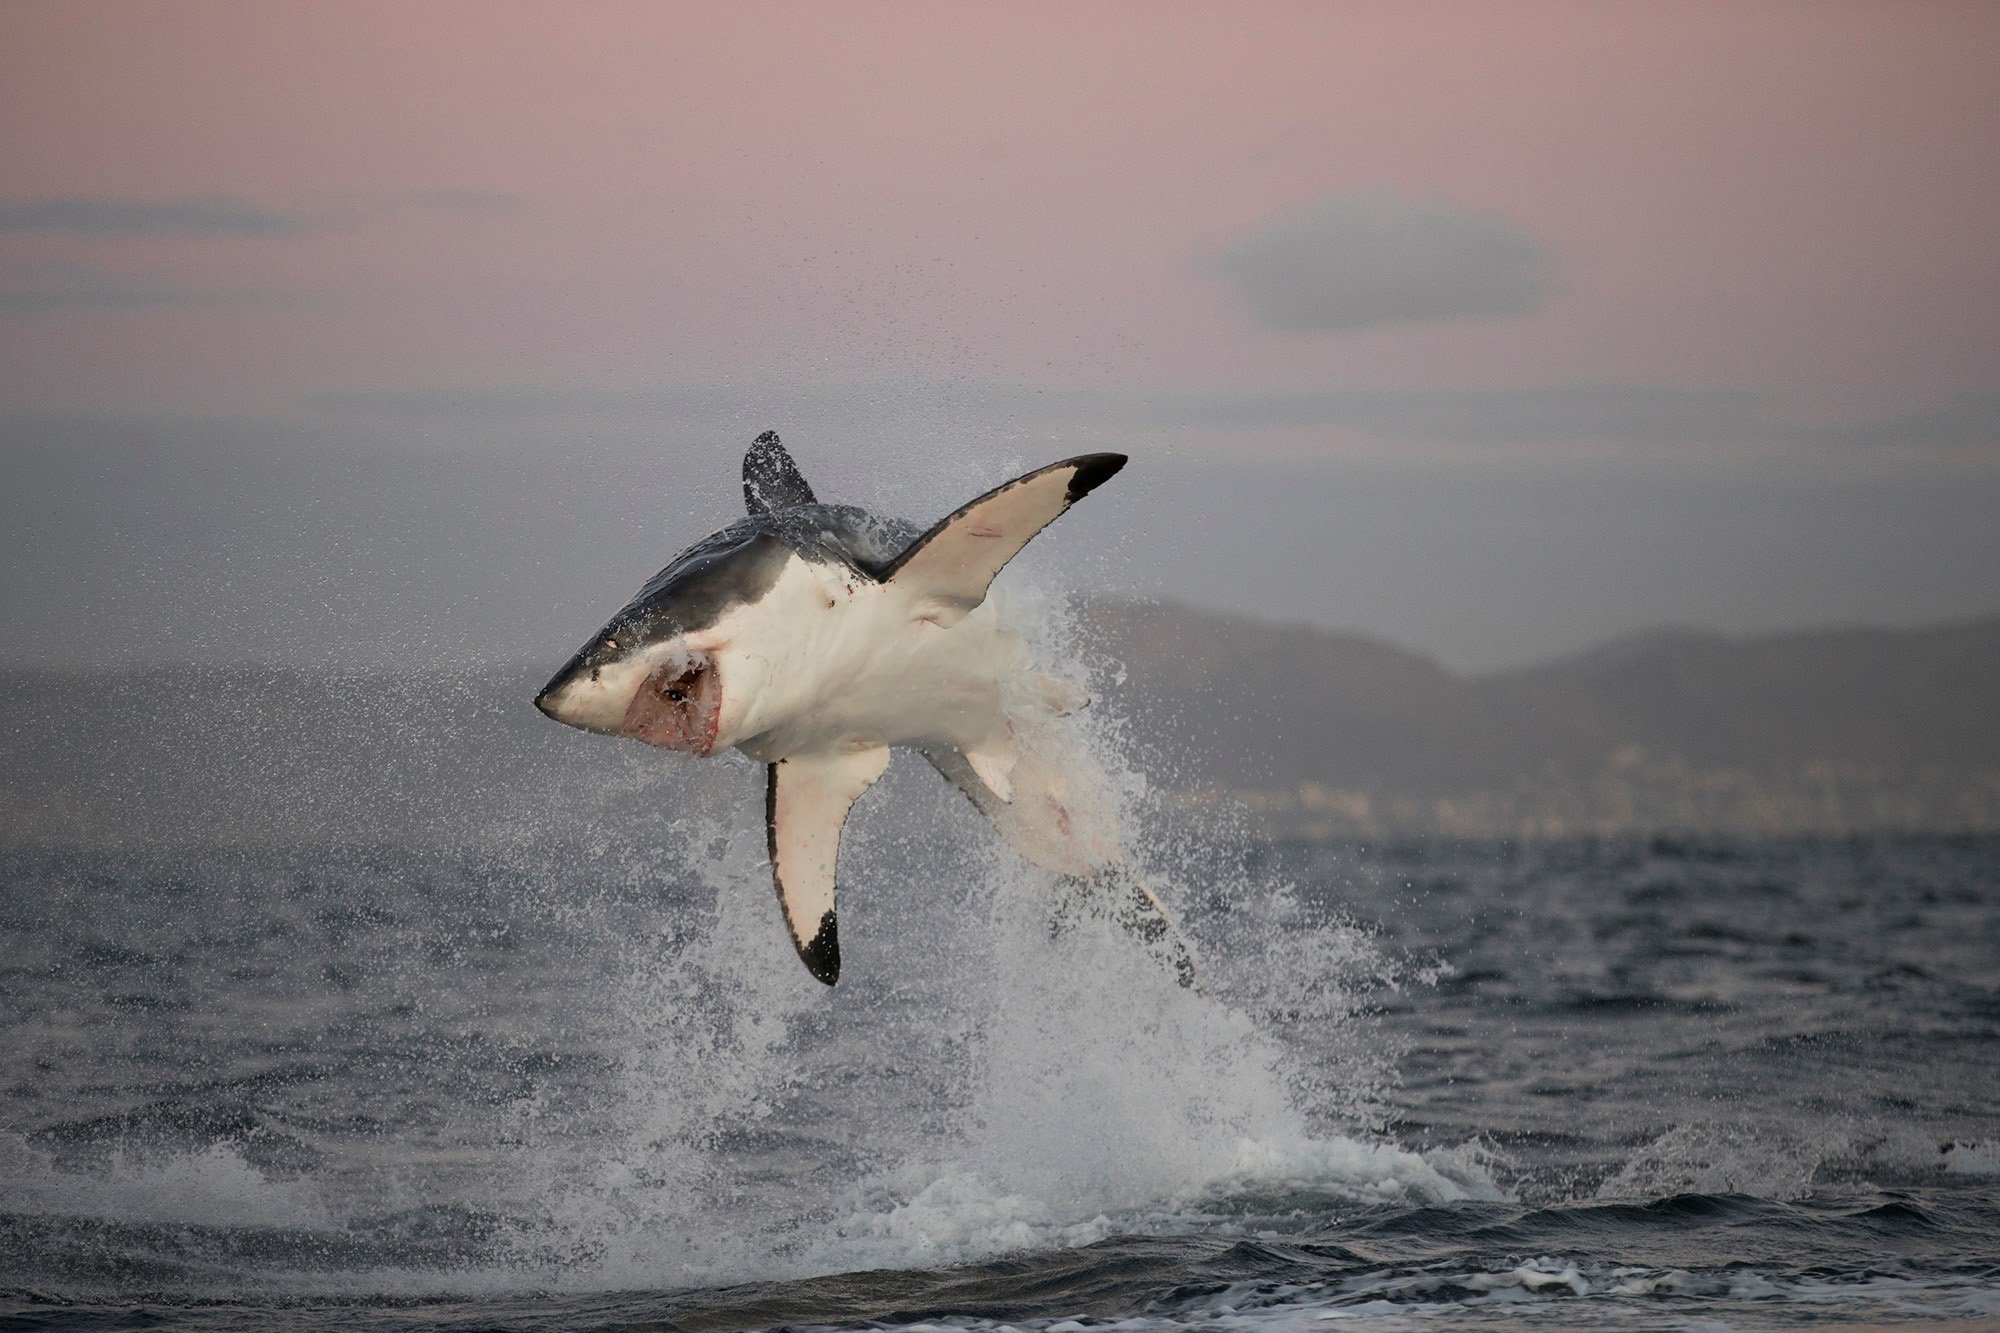 Great-White-Shark-Breaching-in-False-Bay-South-Africa.jpg